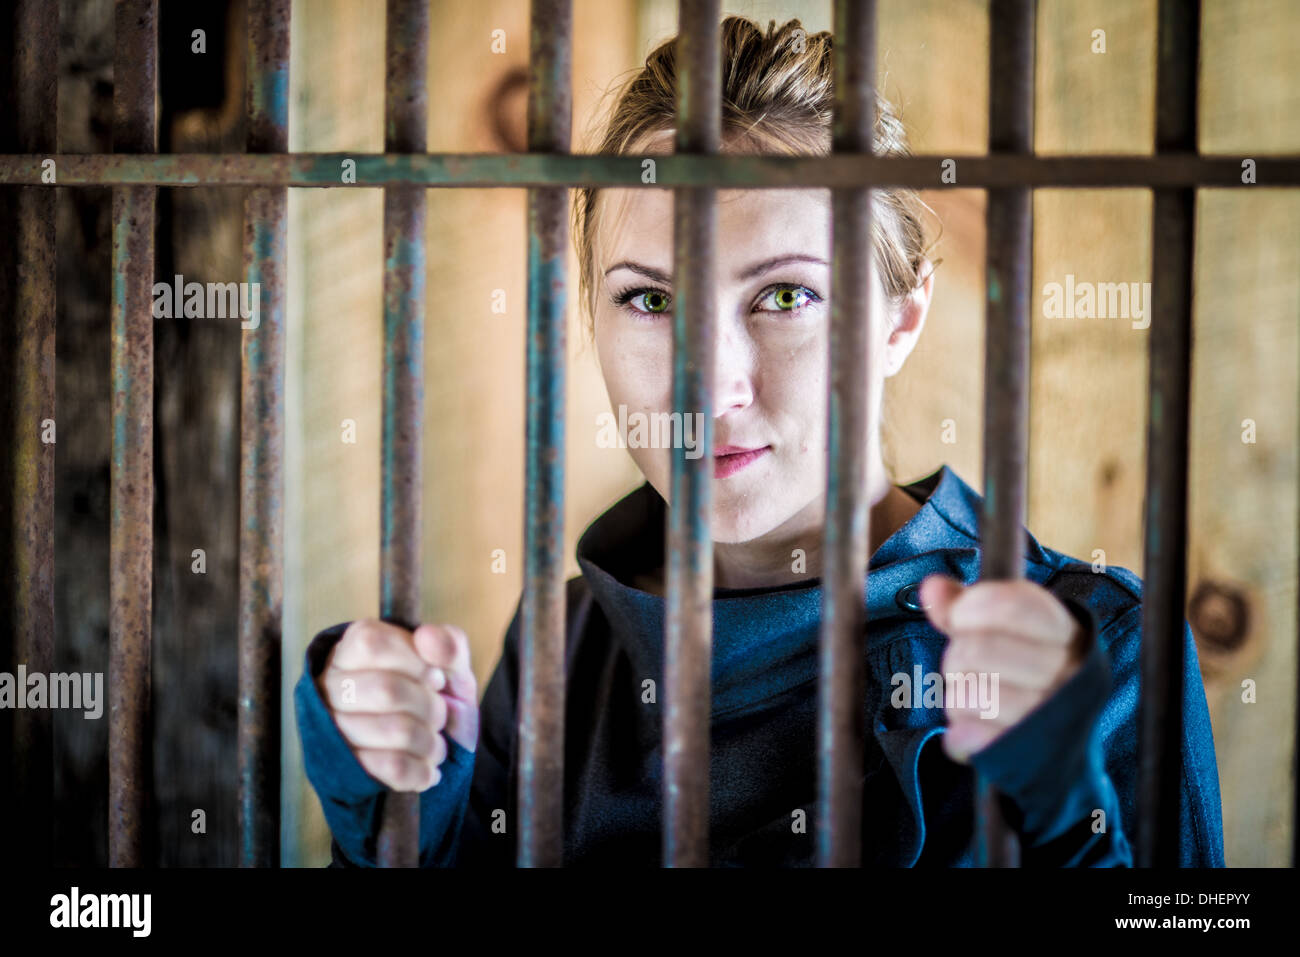 Woman behind bars Stock Photo